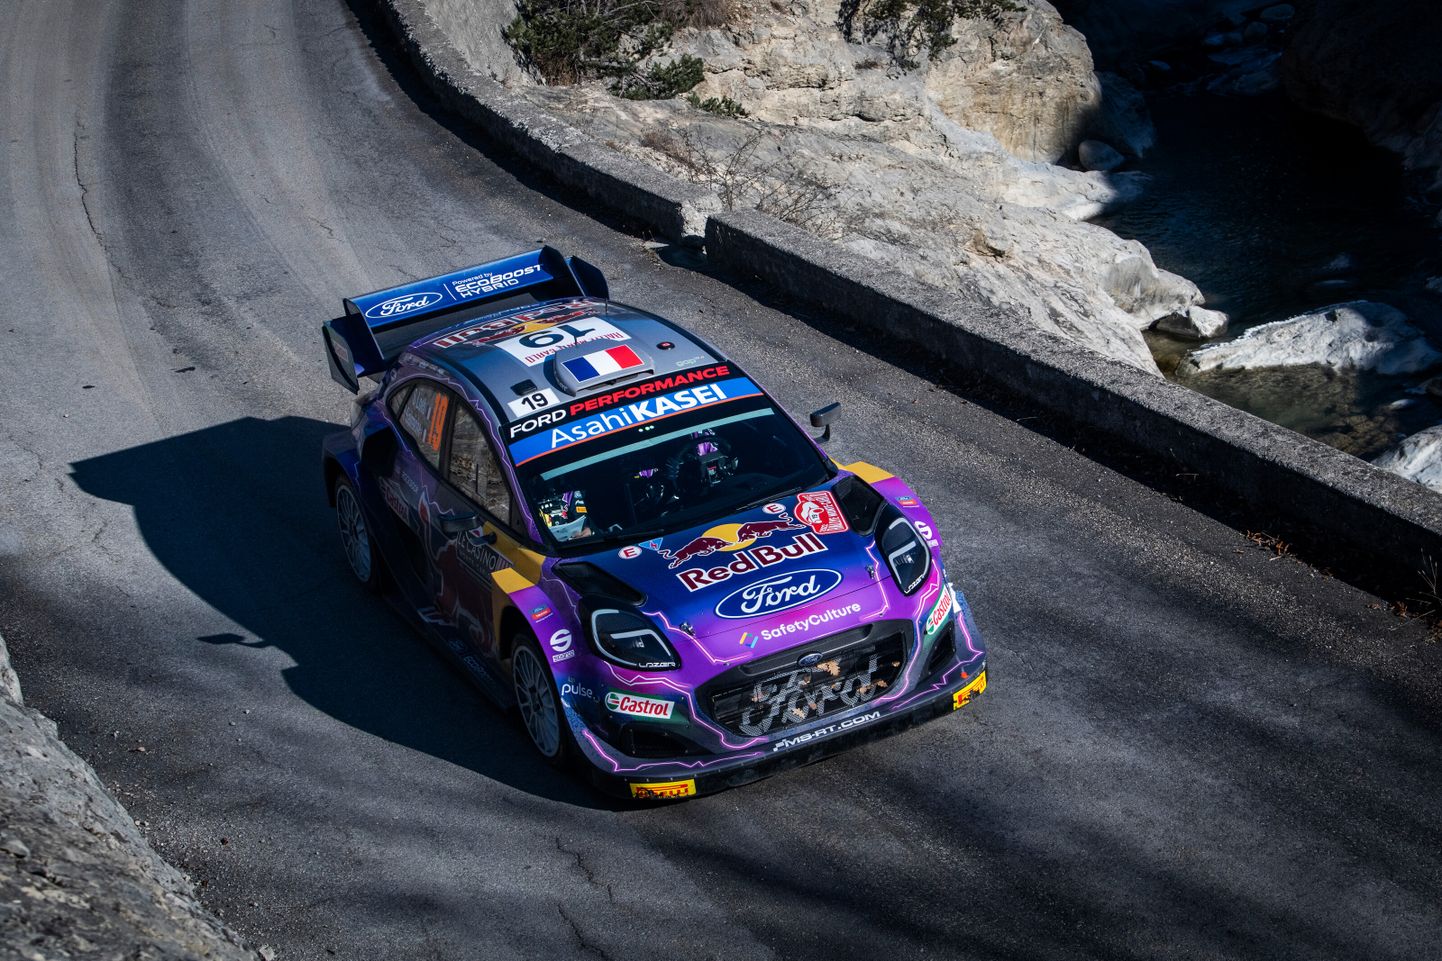 Sébastien Loeb võitis ajaloo esimese MM-etapi, kus kasutusel oli Rally1-autod. WRC2 maailmameister Andreas Mikkelsen arvab, et uusi autotootjaid näeb WRC-sarjas alles siis, kui kasutusele tulevad täiselektrilised ralliautod.